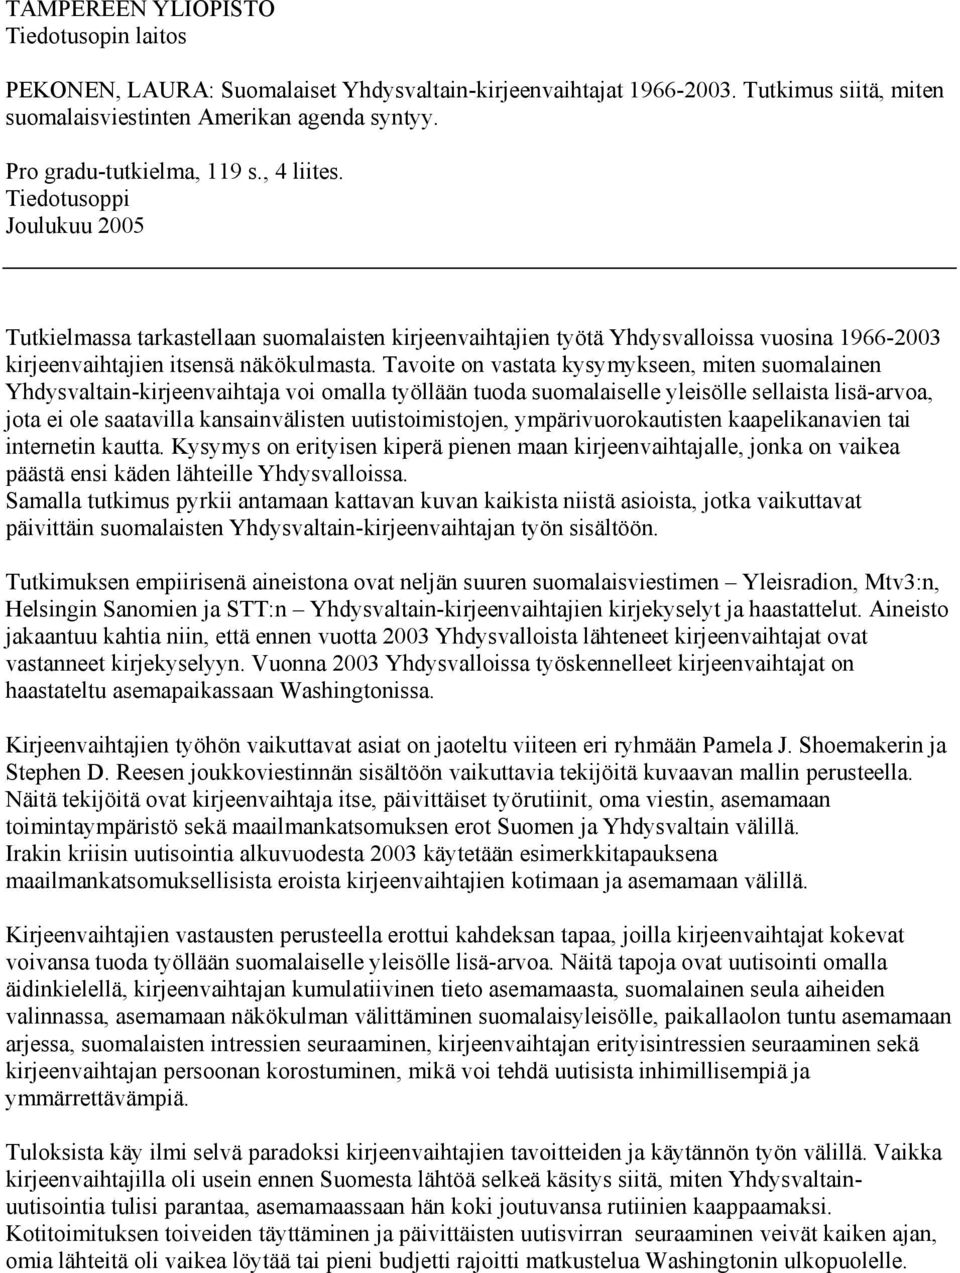 Tiedotusoppi Joulukuu 2005 Tutkielmassa tarkastellaan suomalaisten kirjeenvaihtajien työtä Yhdysvalloissa vuosina 1966-2003 kirjeenvaihtajien itsensä näkökulmasta.